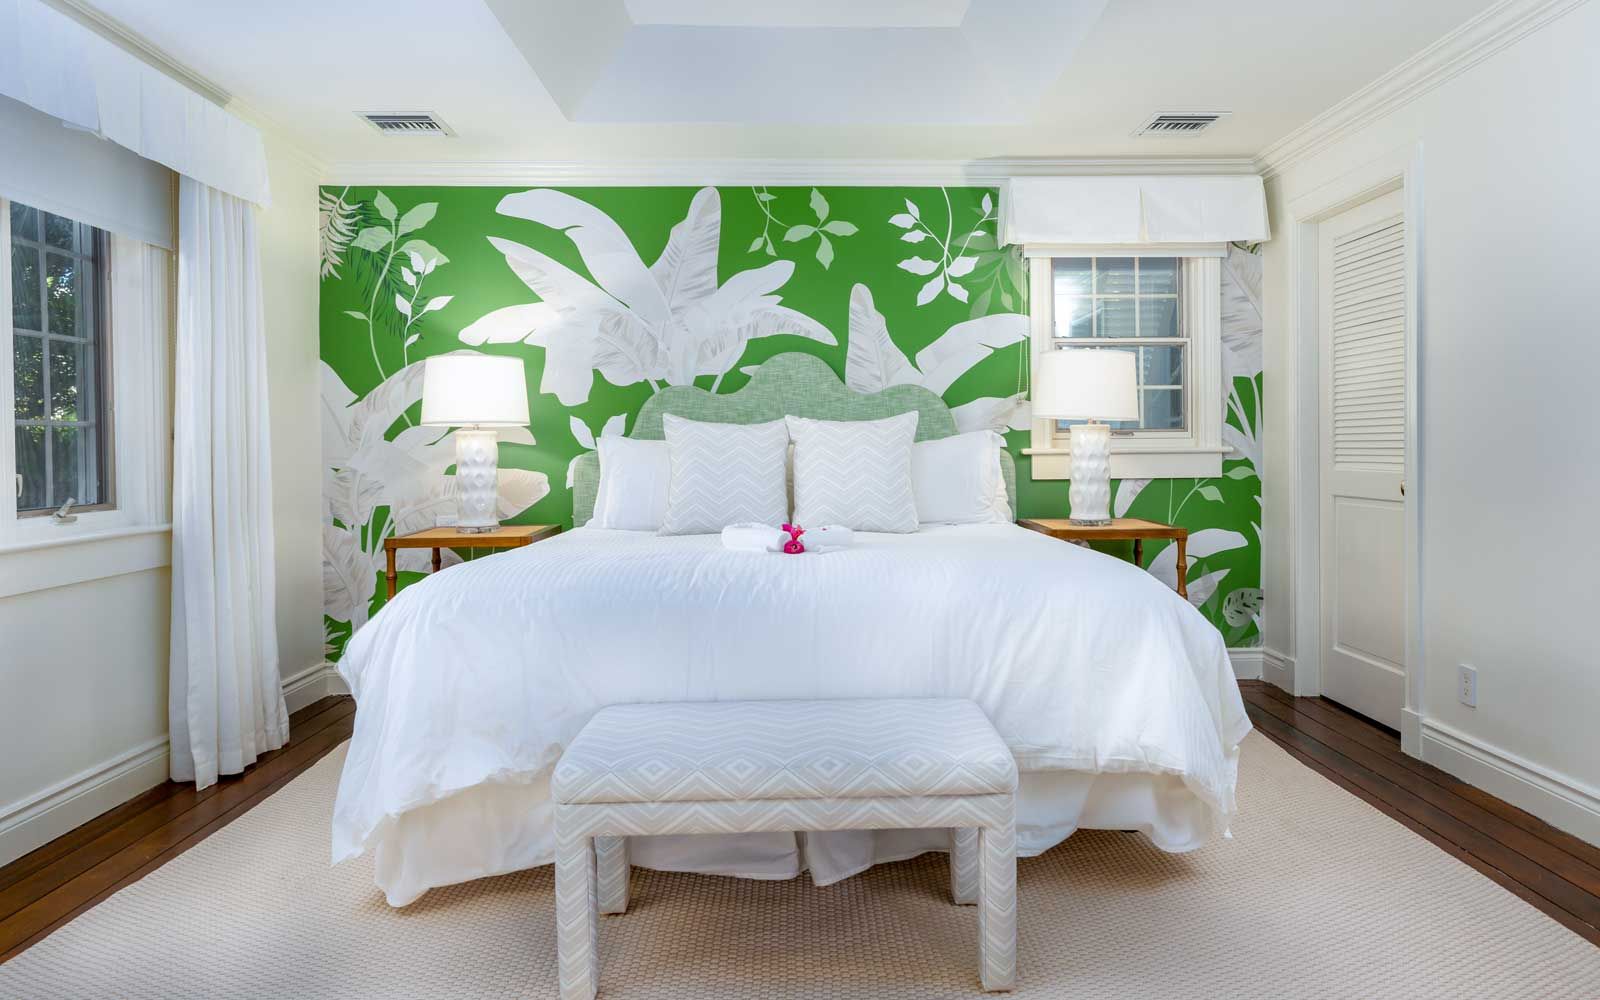 Ein Gästezimmer im Boutique-Resort Point Grace auf den Turks- und Caicosinseln mit einer grün-weißen Wand mit tropischem Print